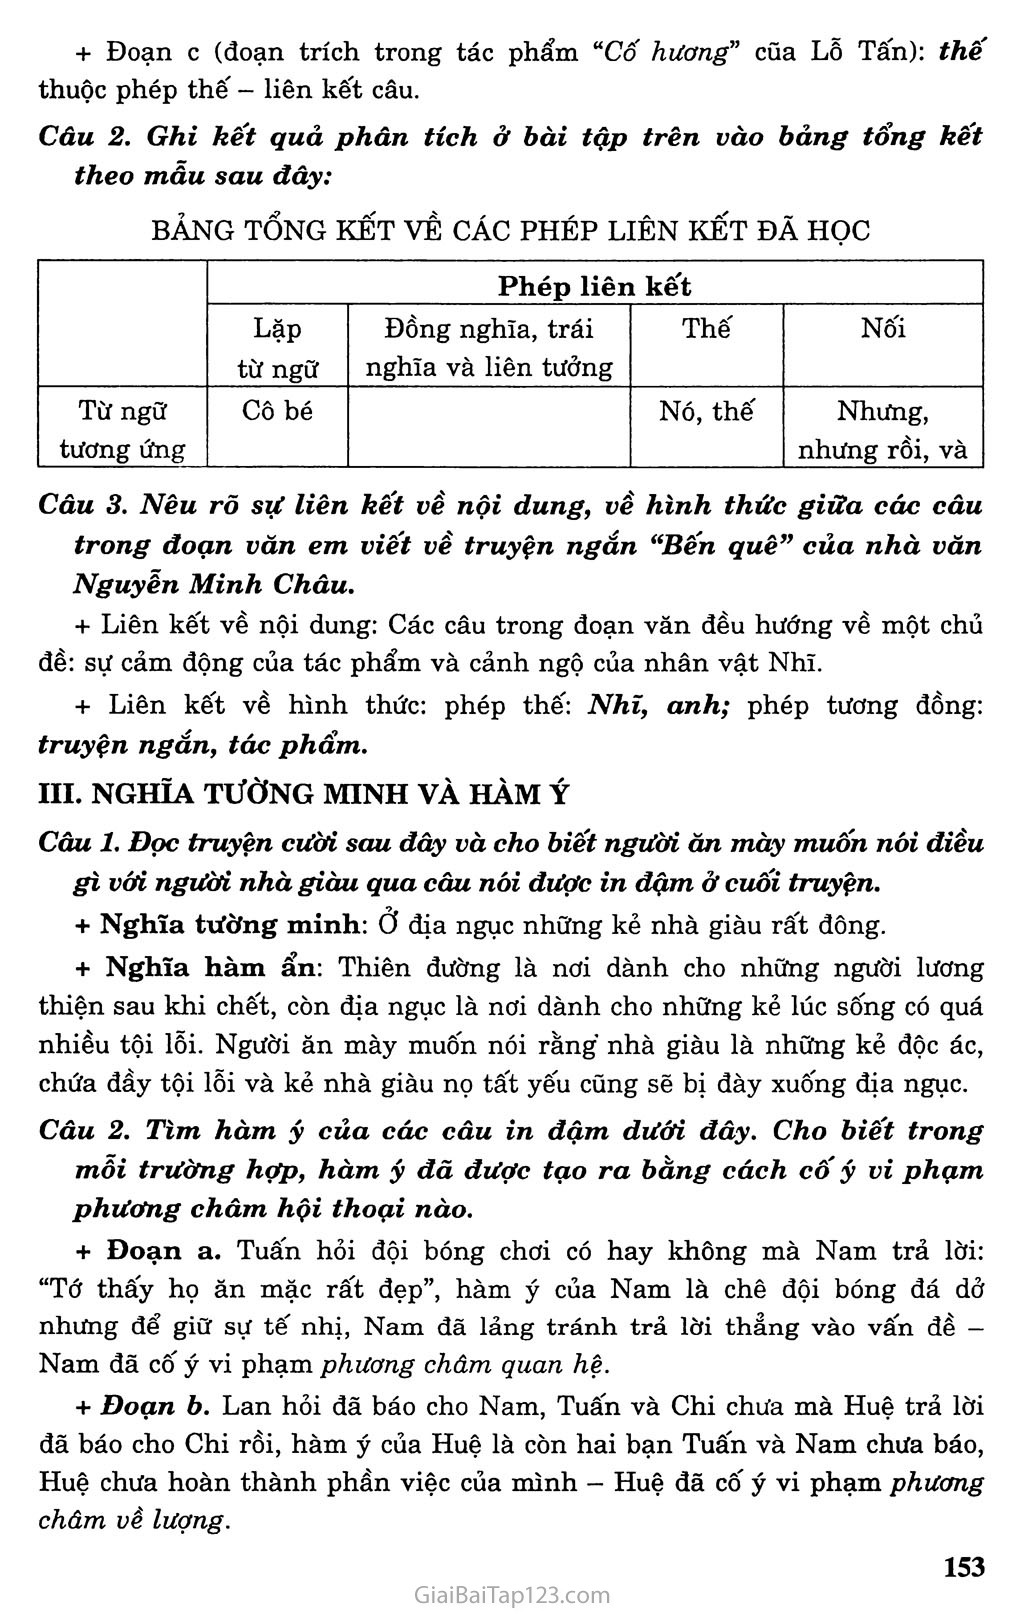 Ôn tập phần Tiếng Việt trang 2